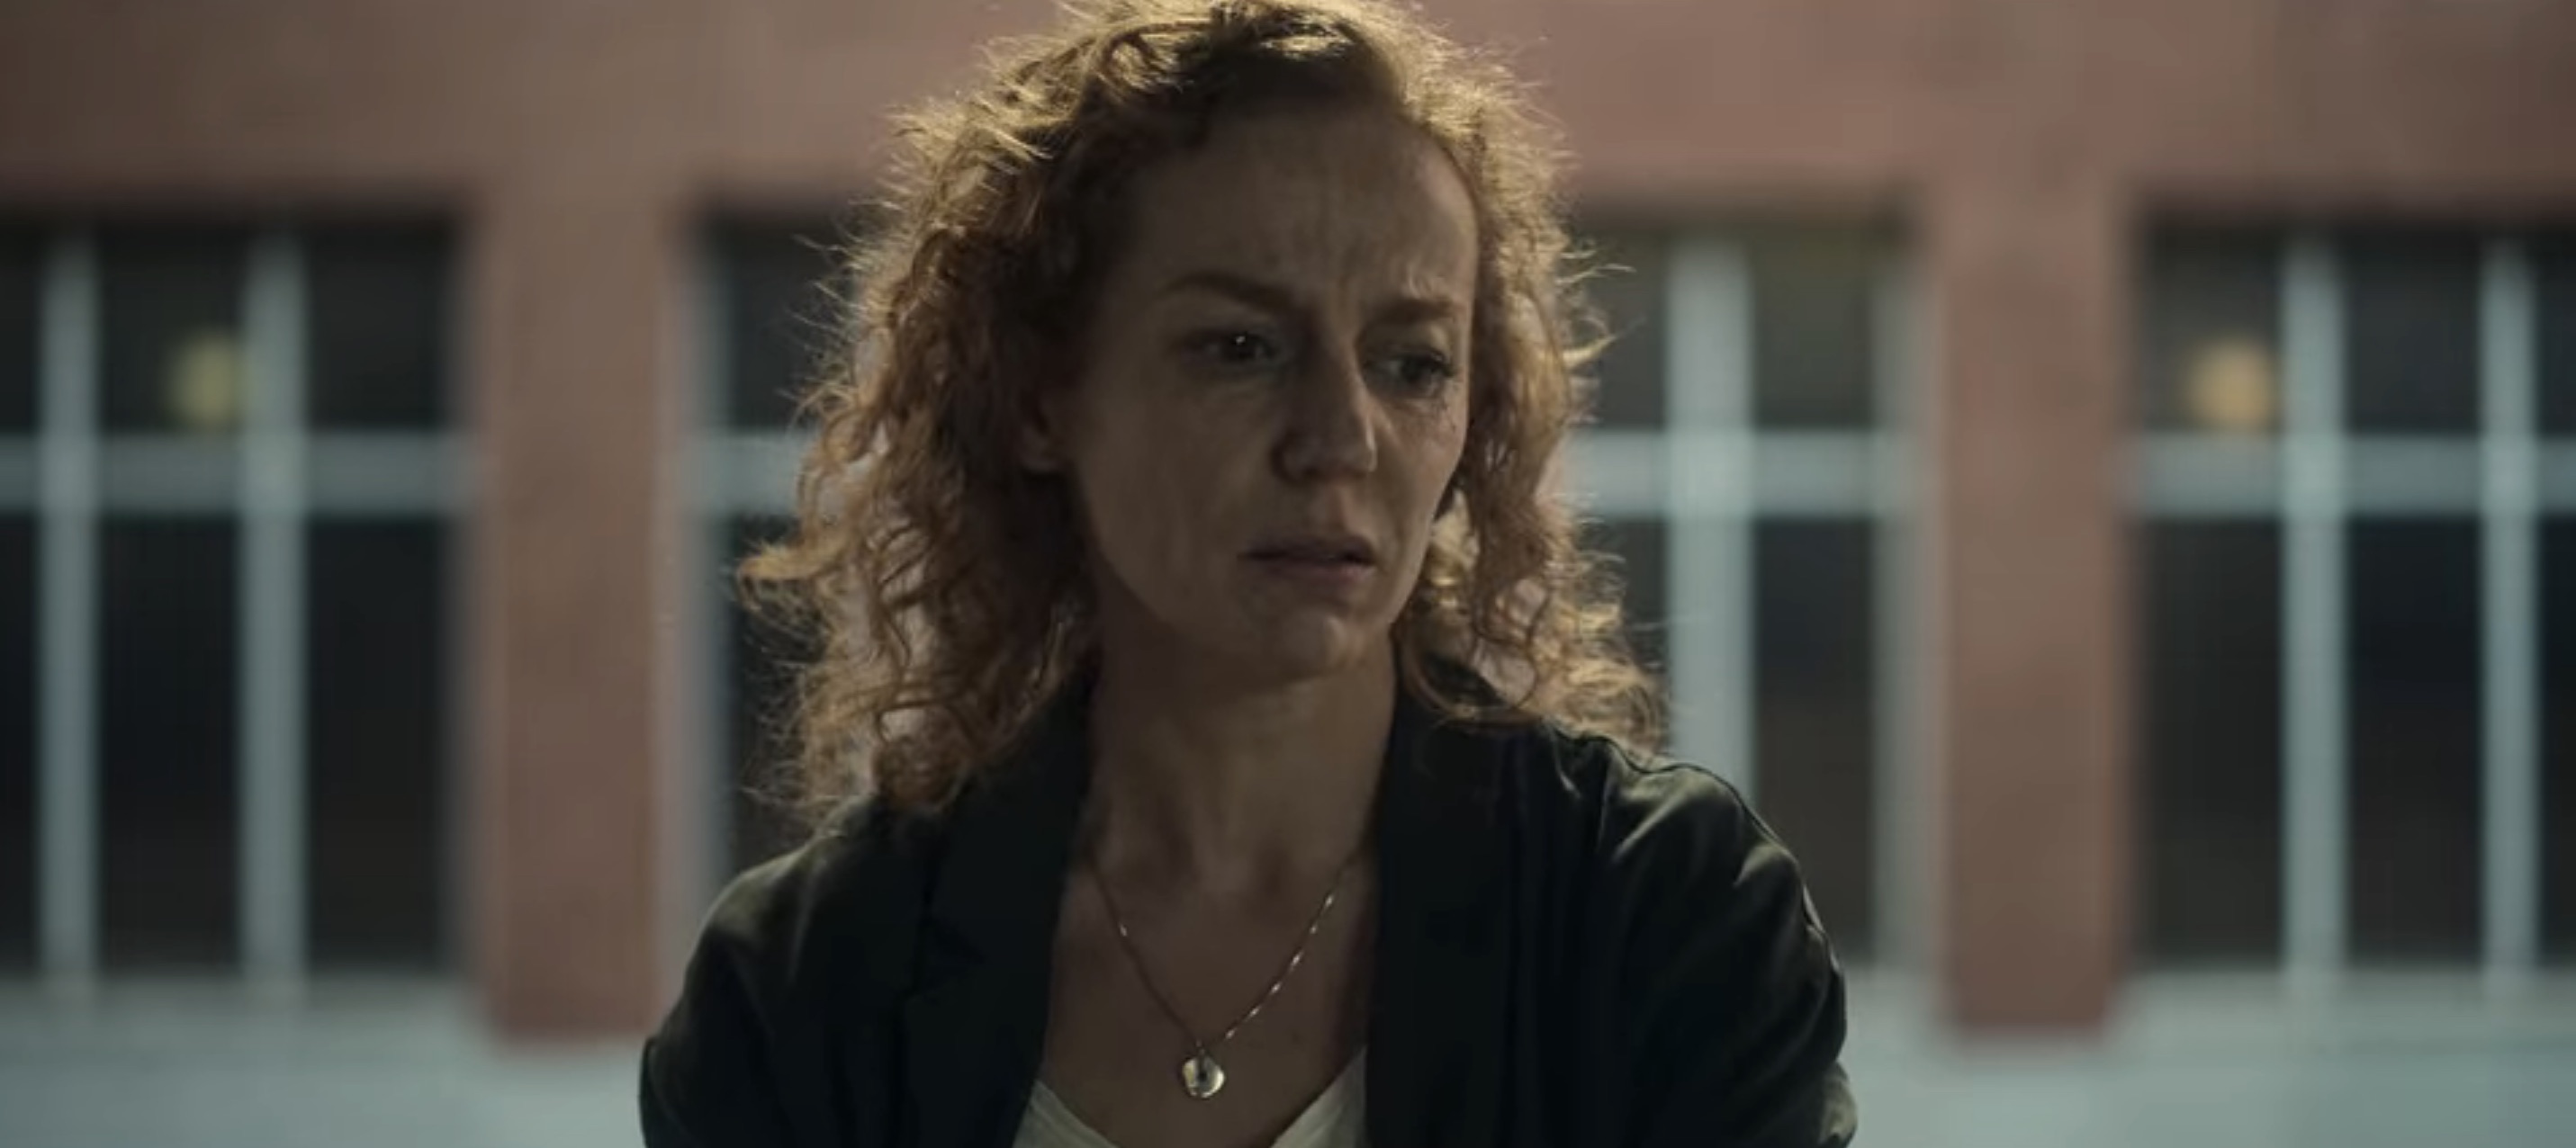 Santo Cast on Netflix - María Vázquez as Arantxa Rivera